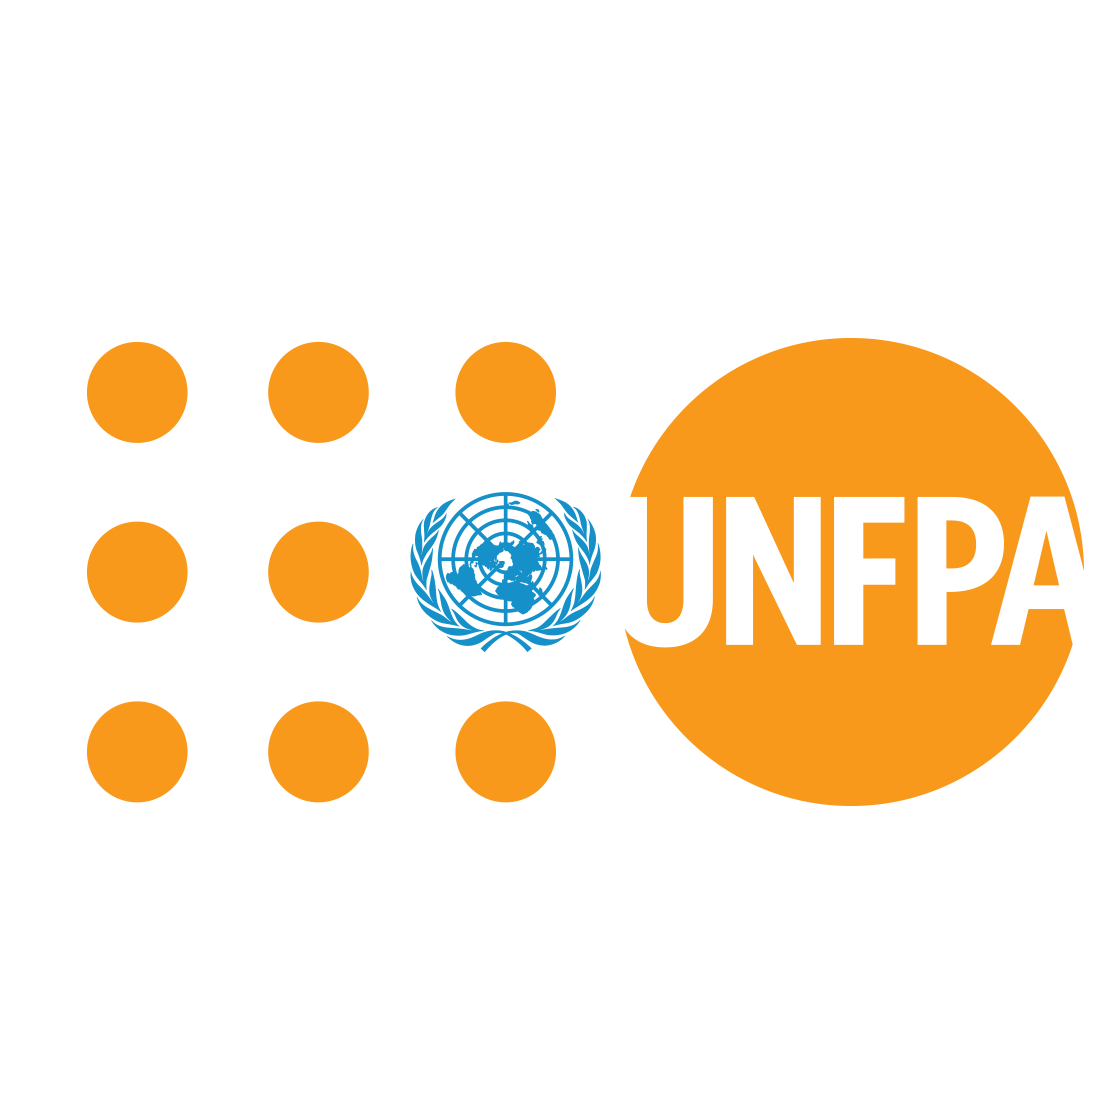 ახალგაზრდების პროგრამა (UNFPA)